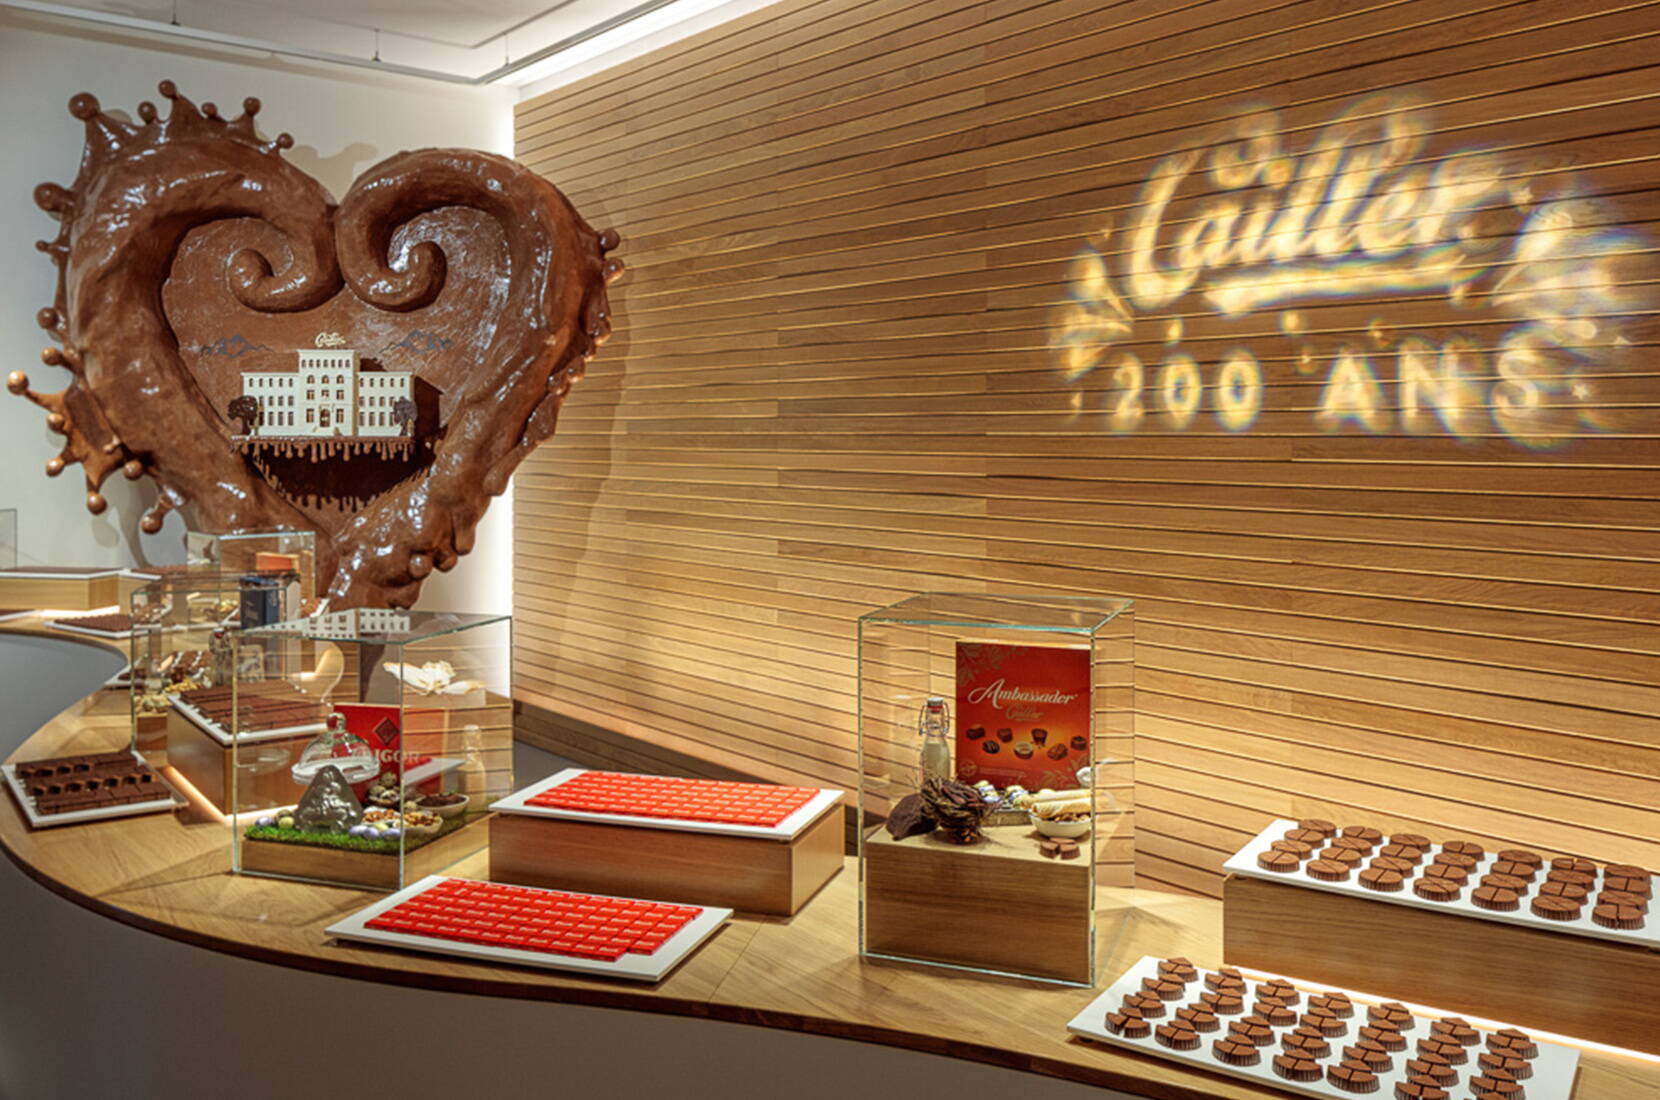 Plonge dans le monde sucré du chocolat lors d'une visite de la Maison Cailler. La visite interactive de la fabrique Cailler t'emmènera pendant environ une heure dans un voyage captivant à travers l'histoire du chocolat, des Aztèques aux innovations d'aujourd'hui.